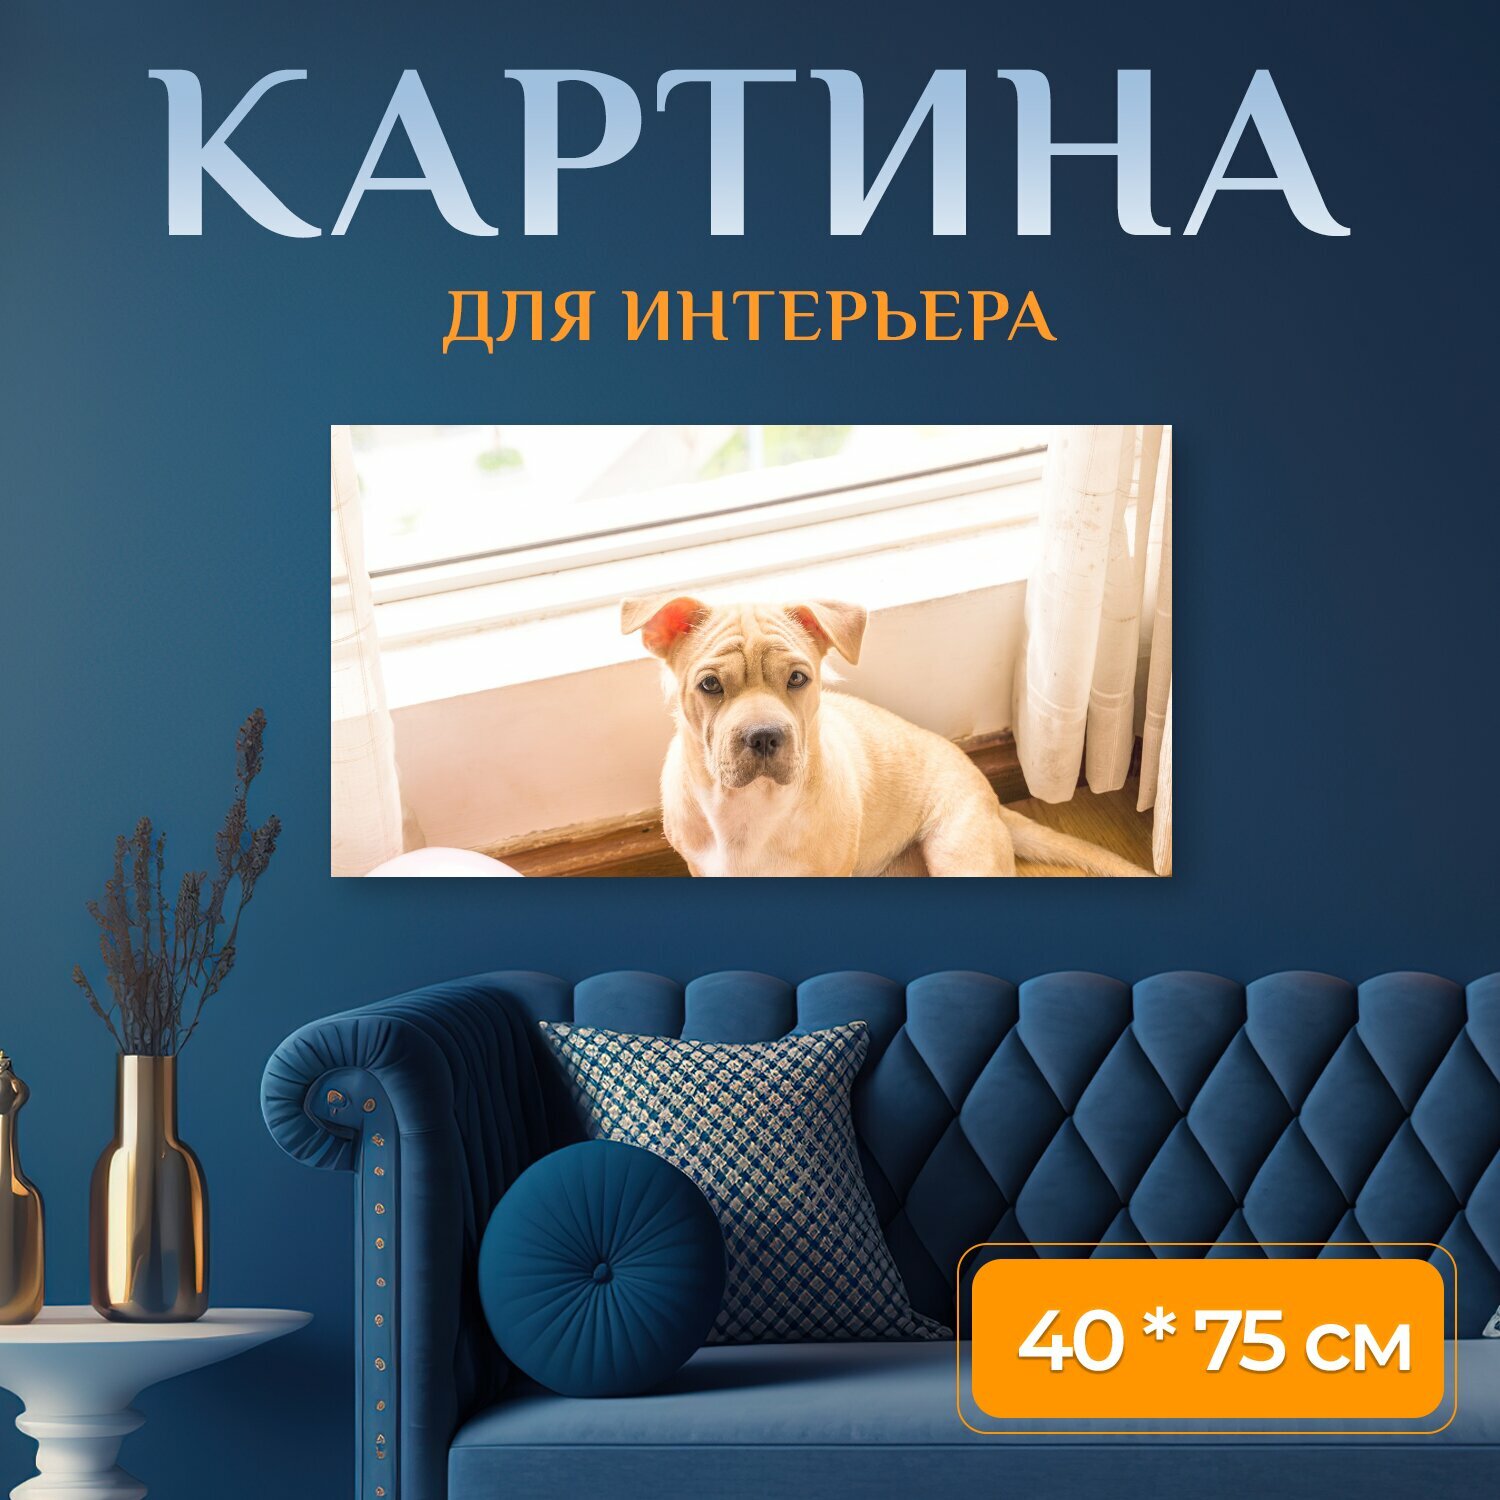 Картина на холсте "Собака домашний питомец дом" на подрамнике 75х40 см. для интерьера